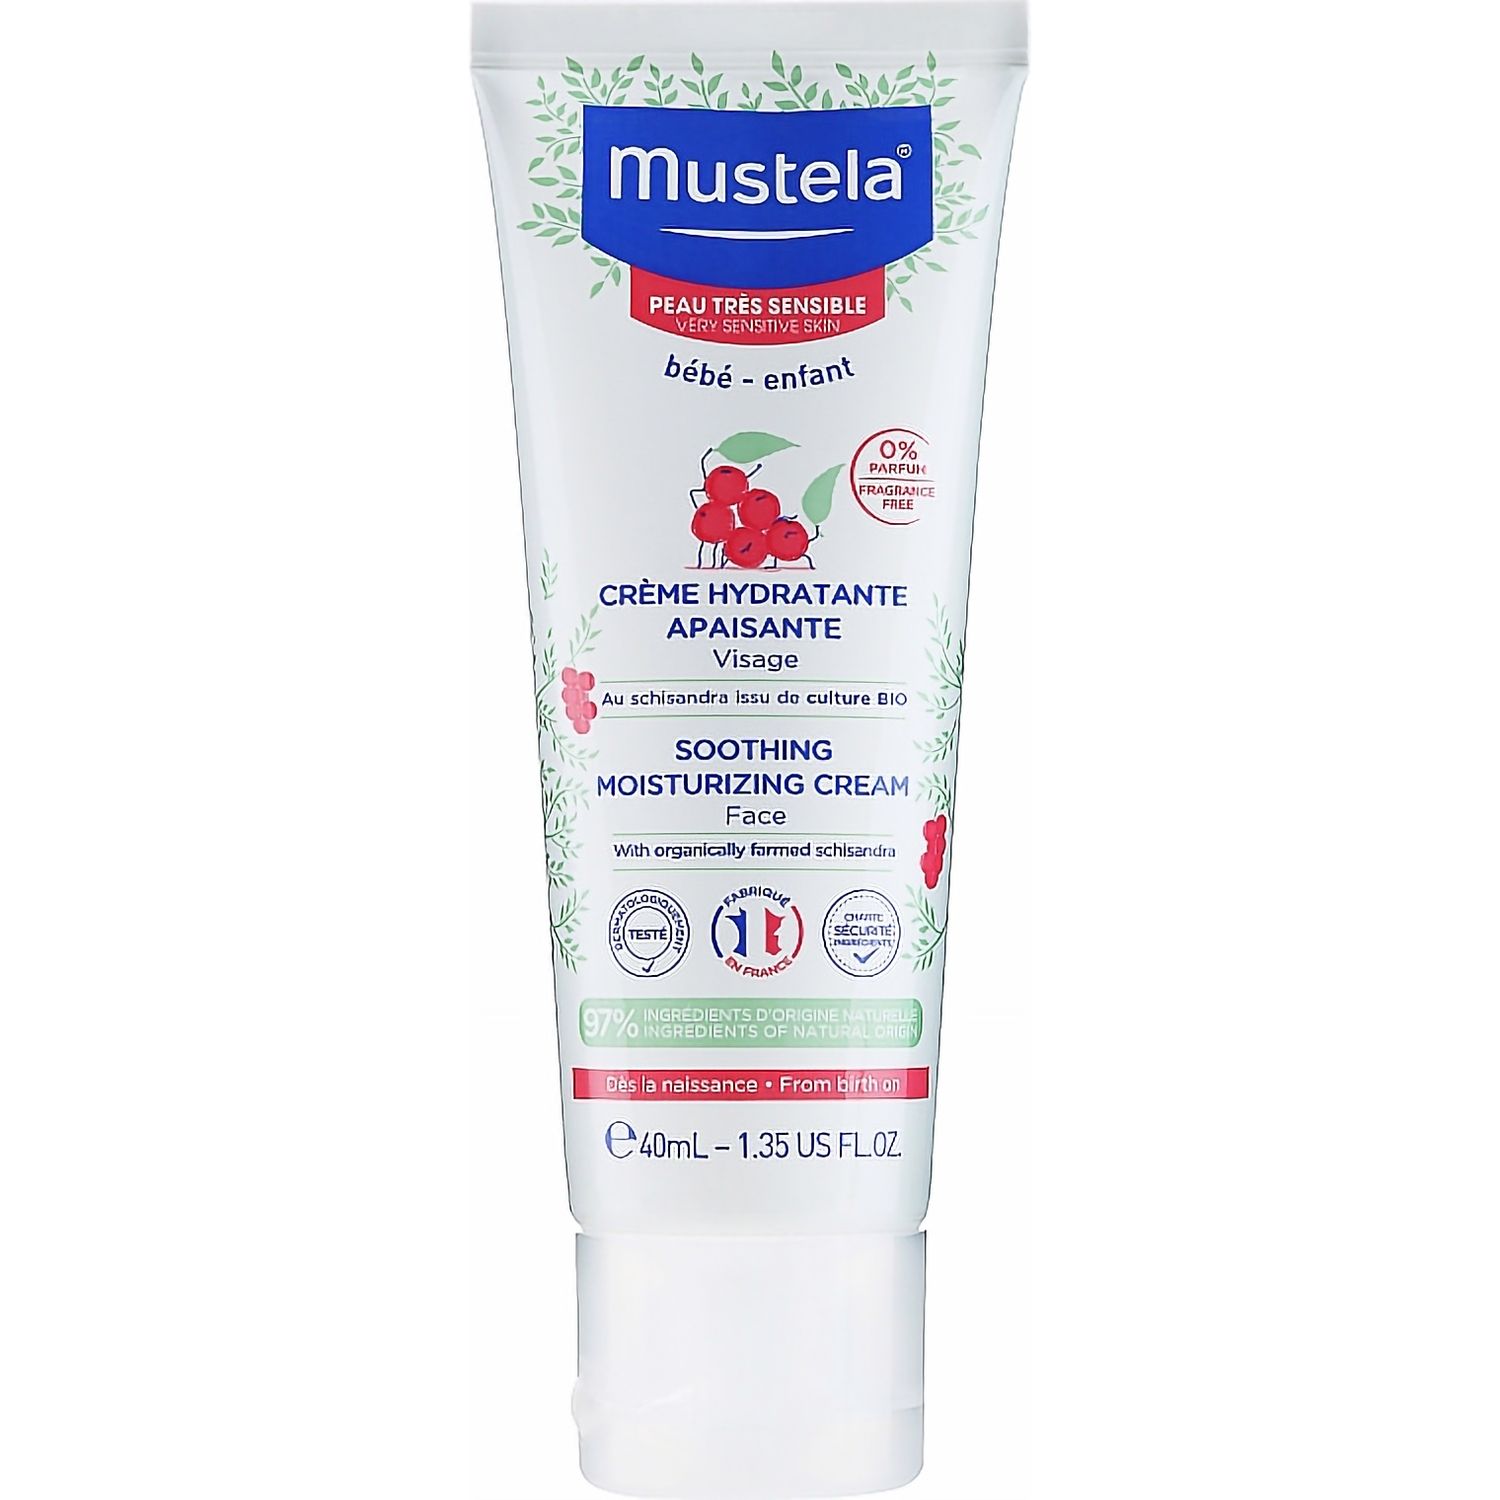 Увлажняющий крем для лица Mustela Soothing Moisturizing Cream, для чувствительной кожи, 40 мл - фото 1